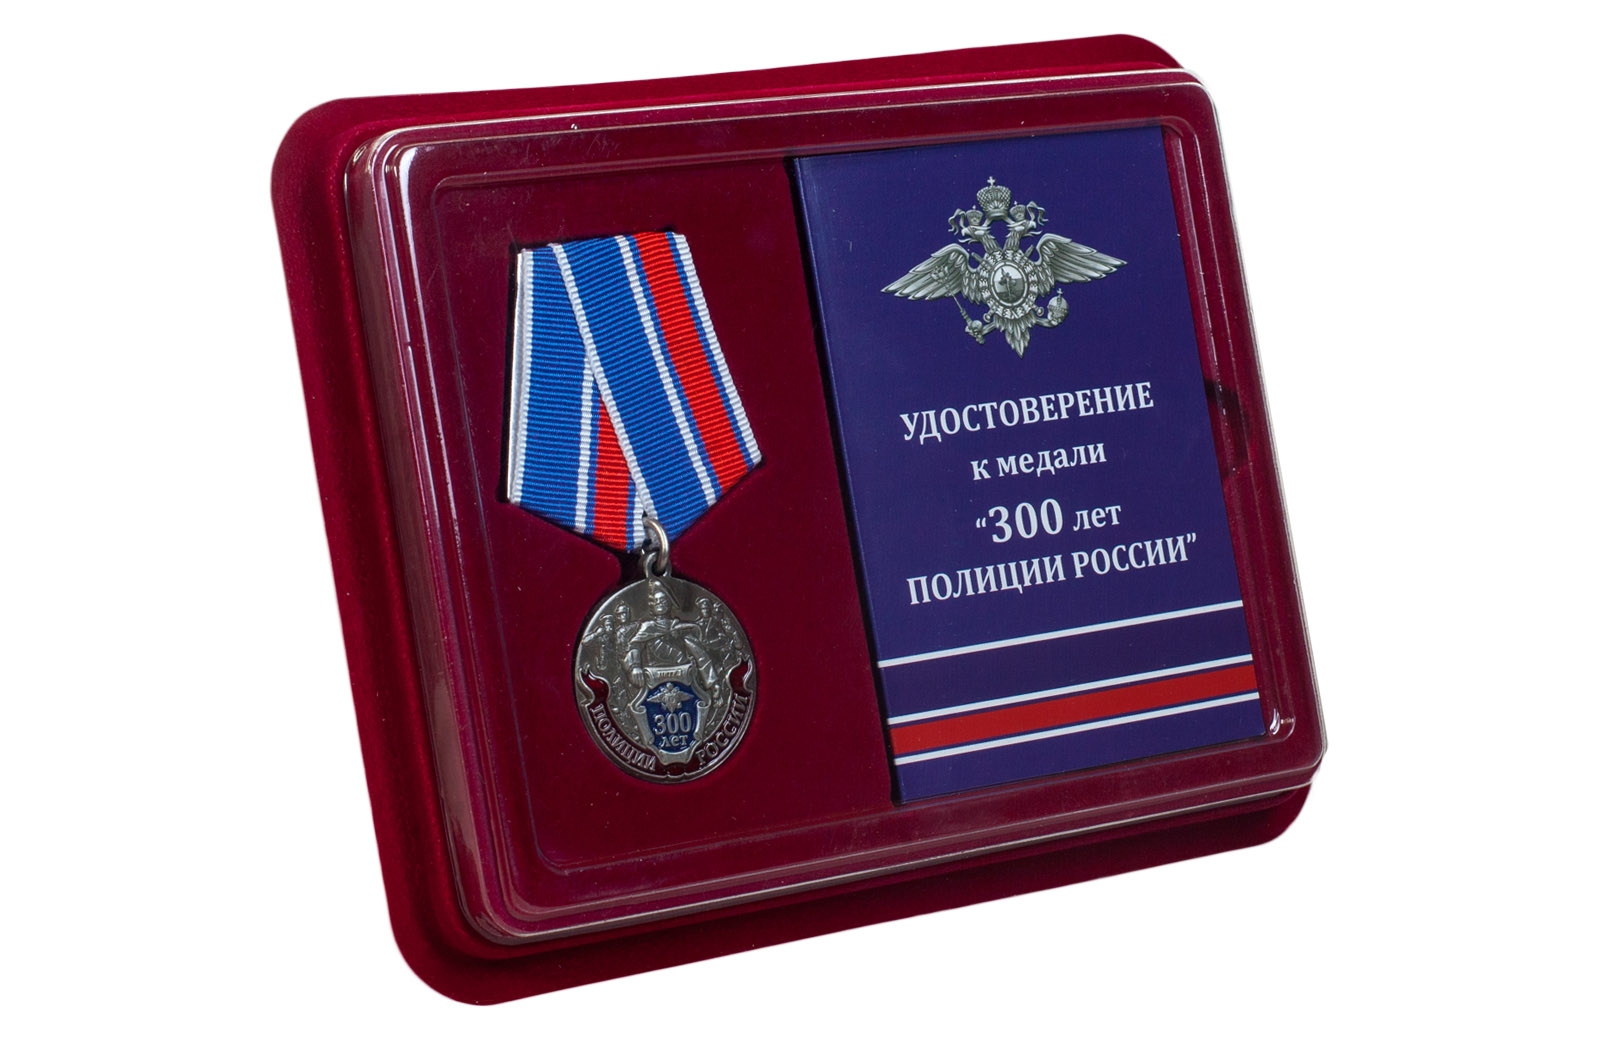 Купить юбилейную медаль 300 лет Российской полиции по лучшей цене